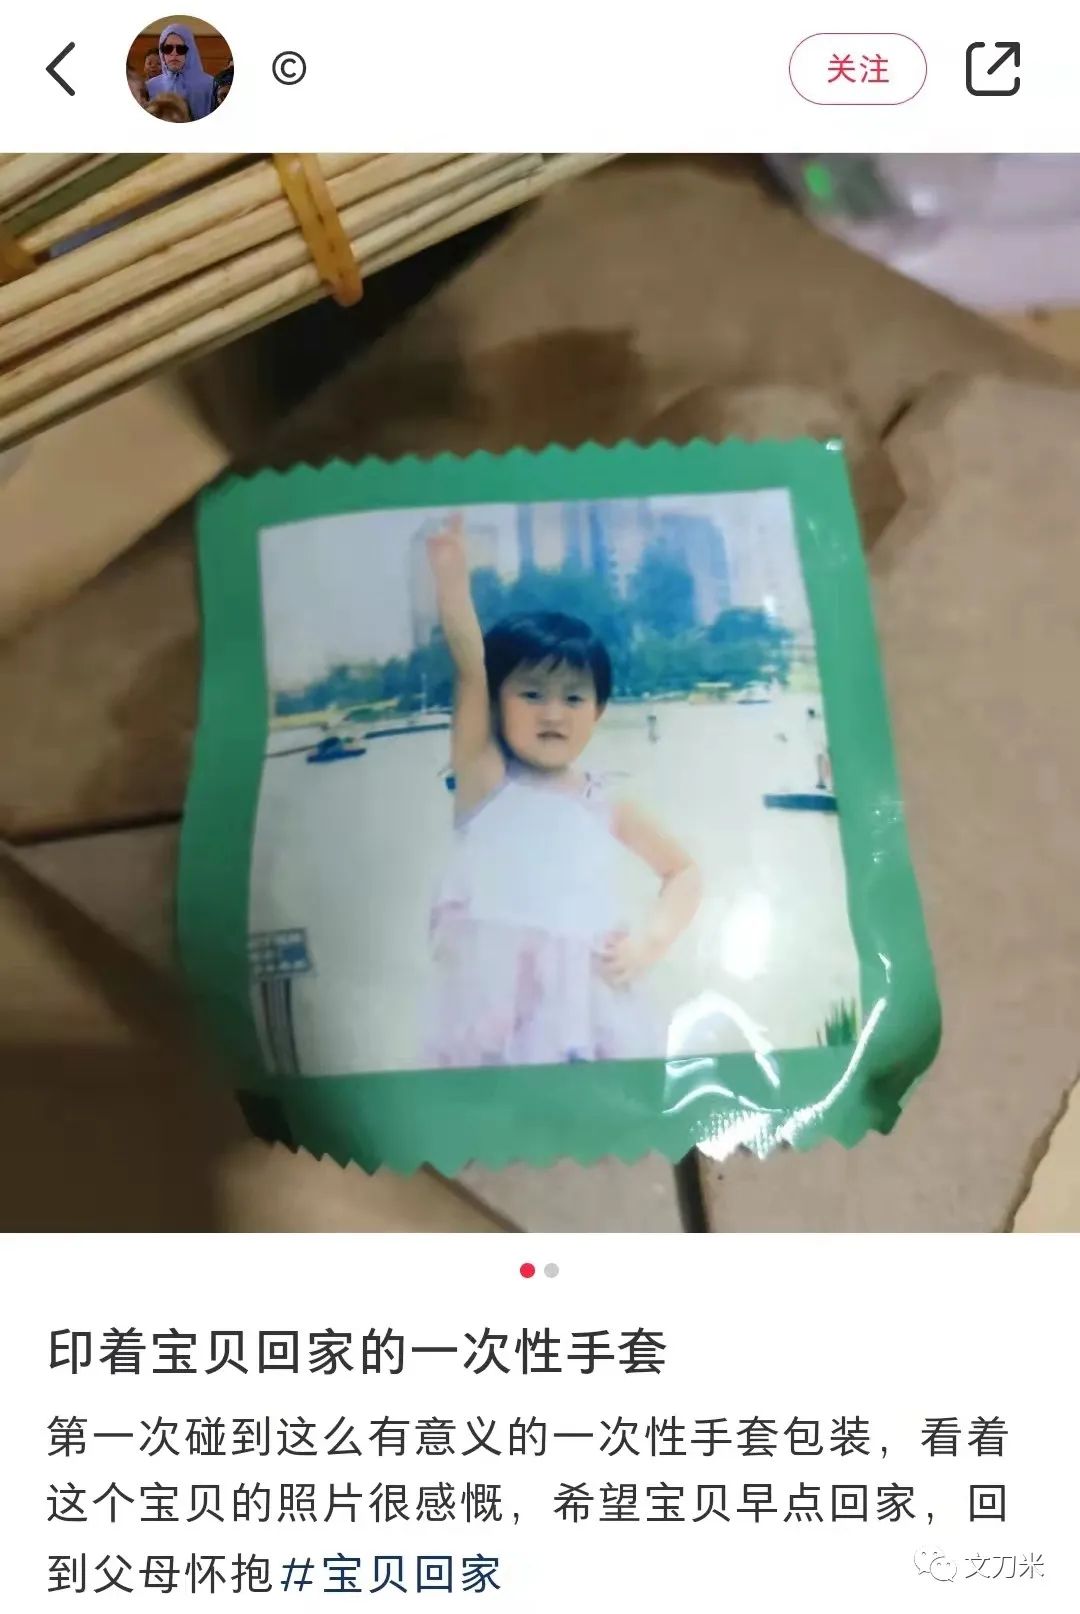 2014年海南 印刷 包装 行业前景_广州印刷包装盒_青岛 包装 印刷